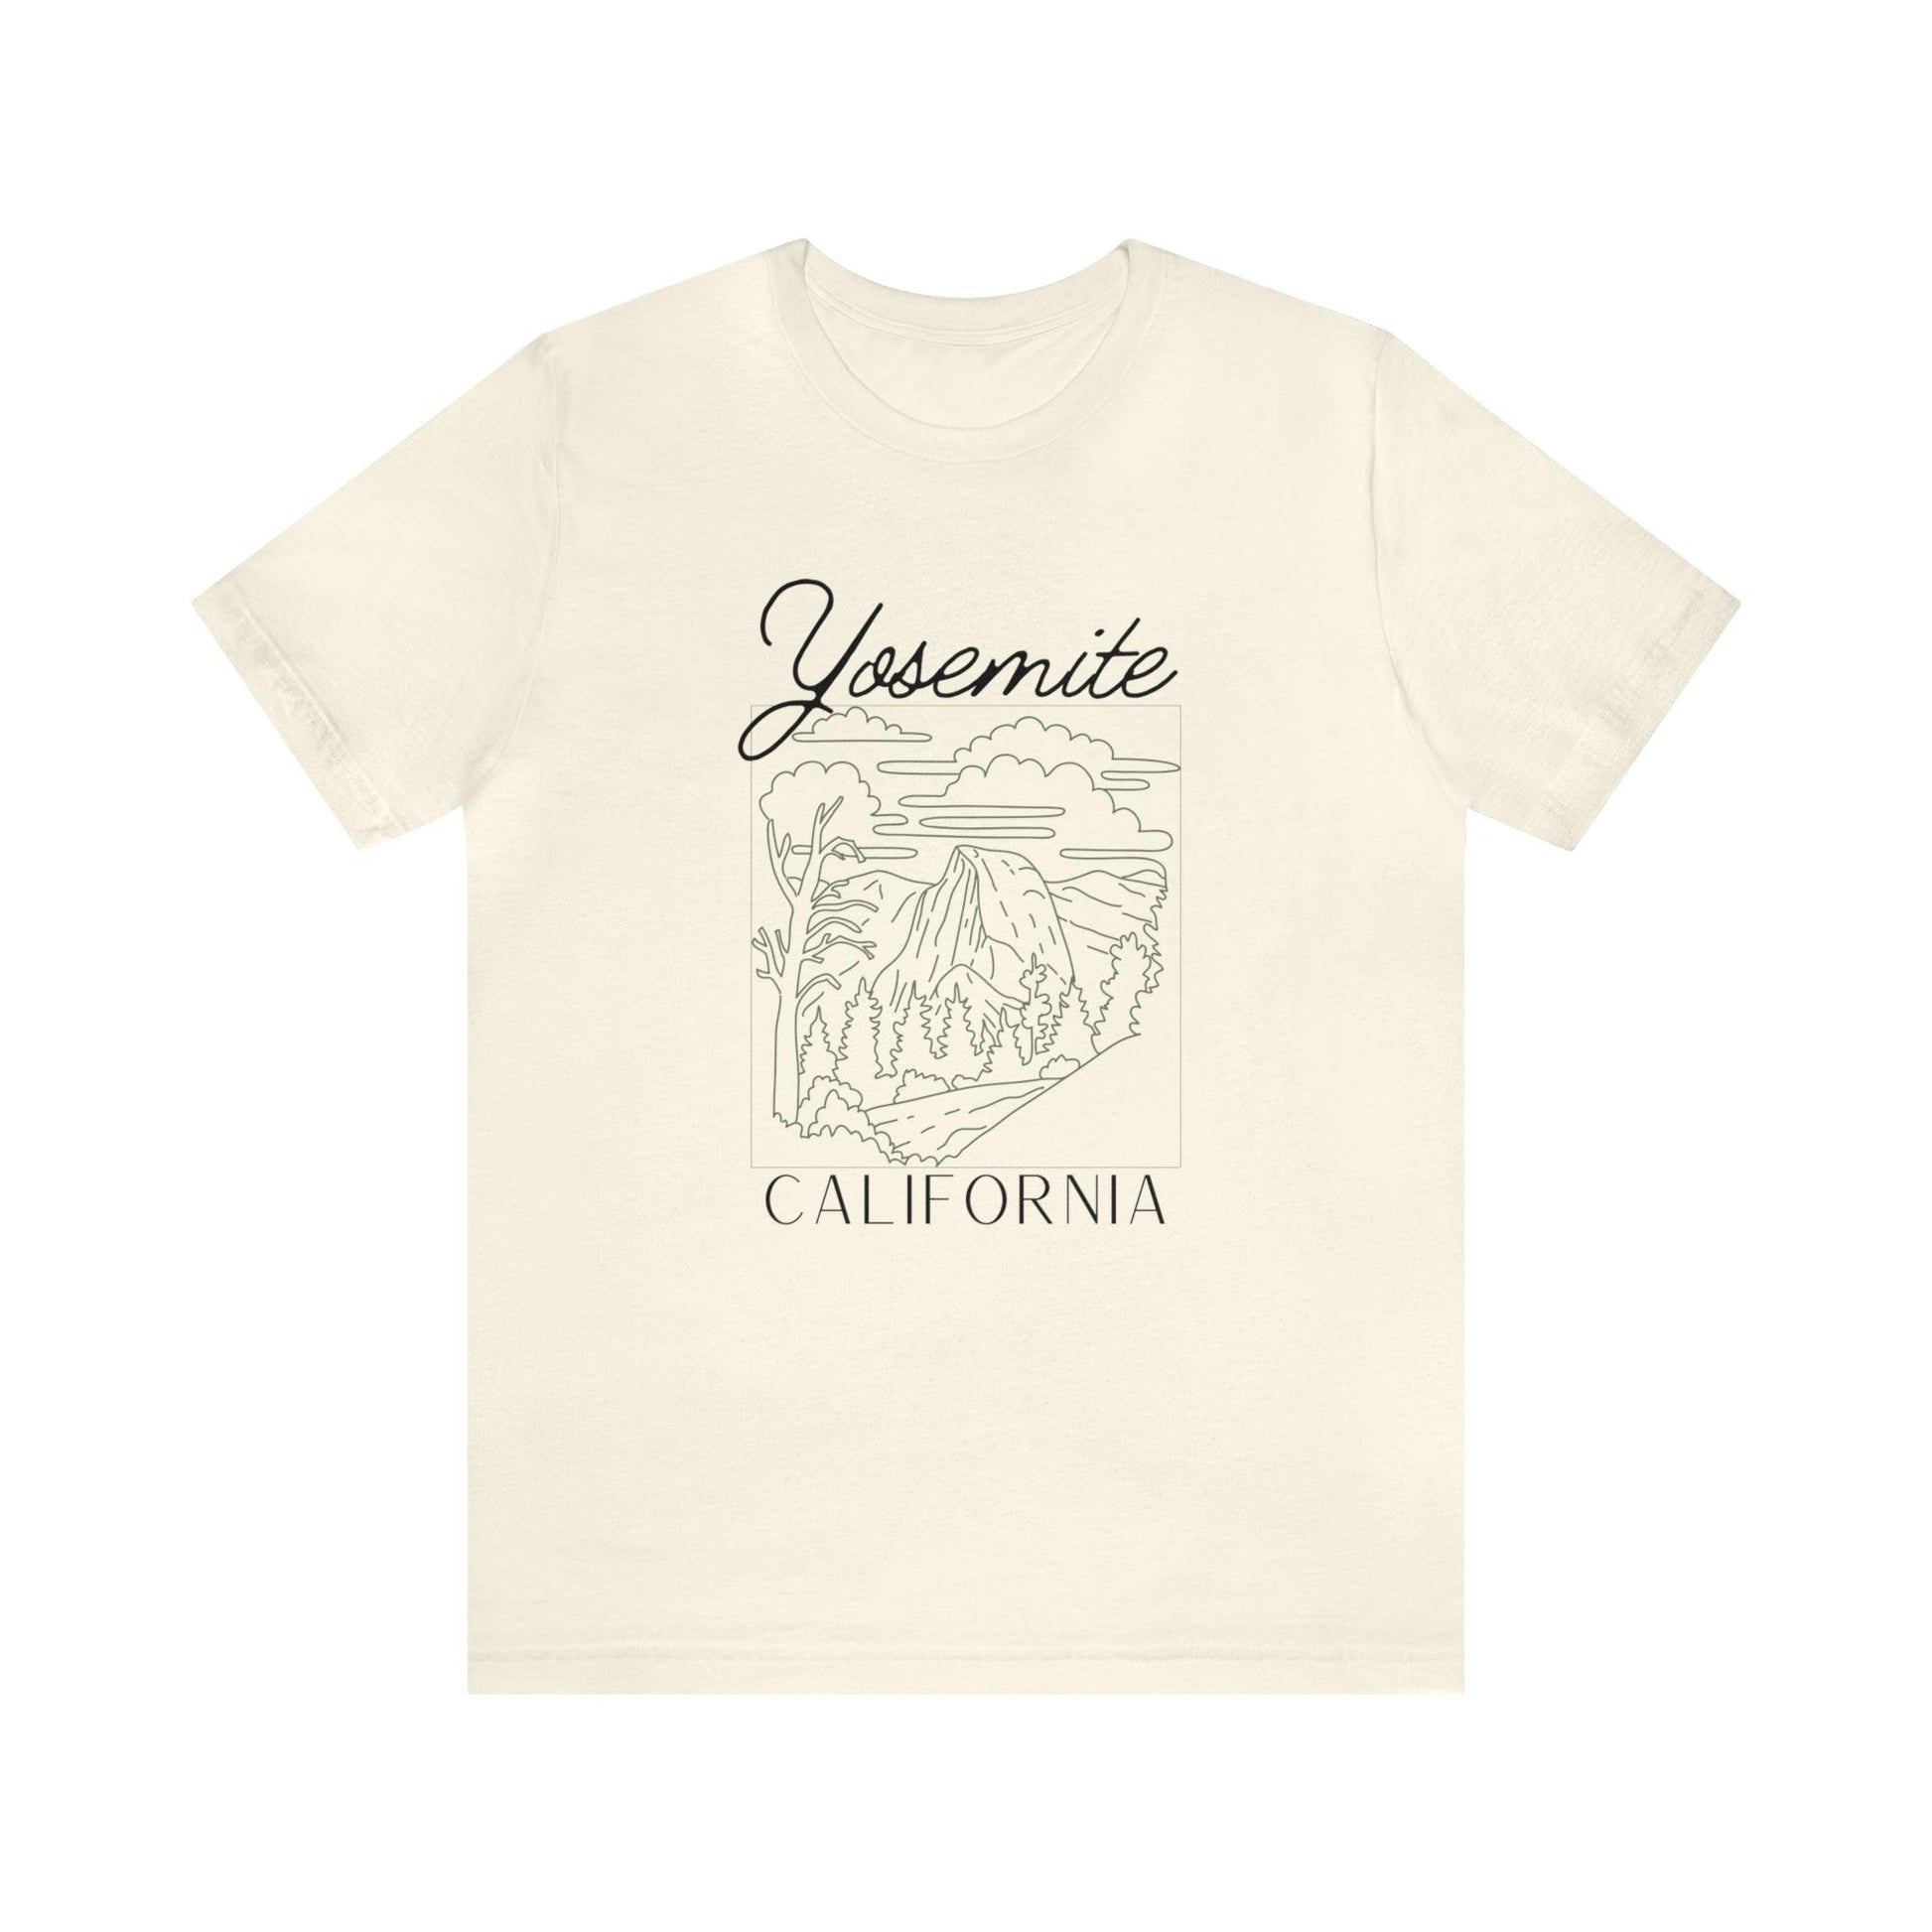 Yosemite, California: A Natural Wonder on a T-Shirt - The Pura Vida Co.